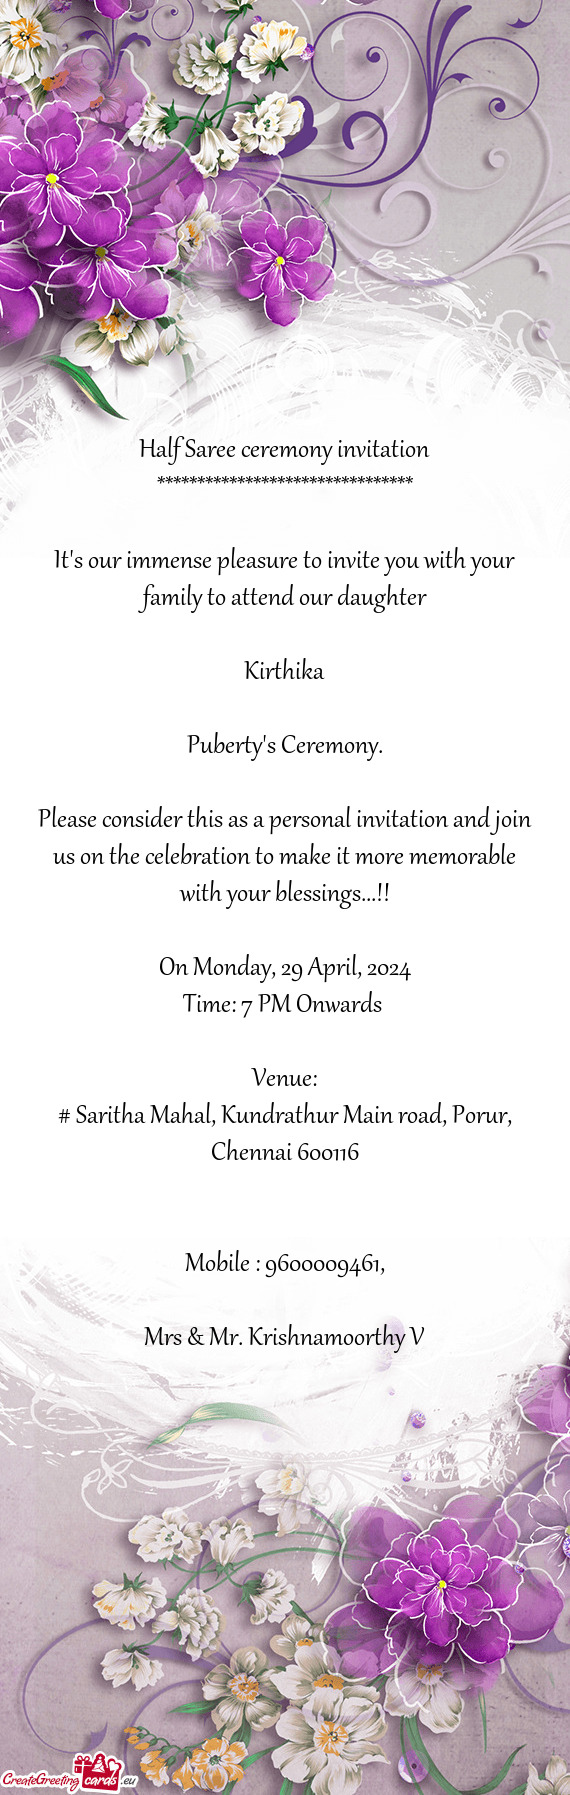 Puberty's Ceremony